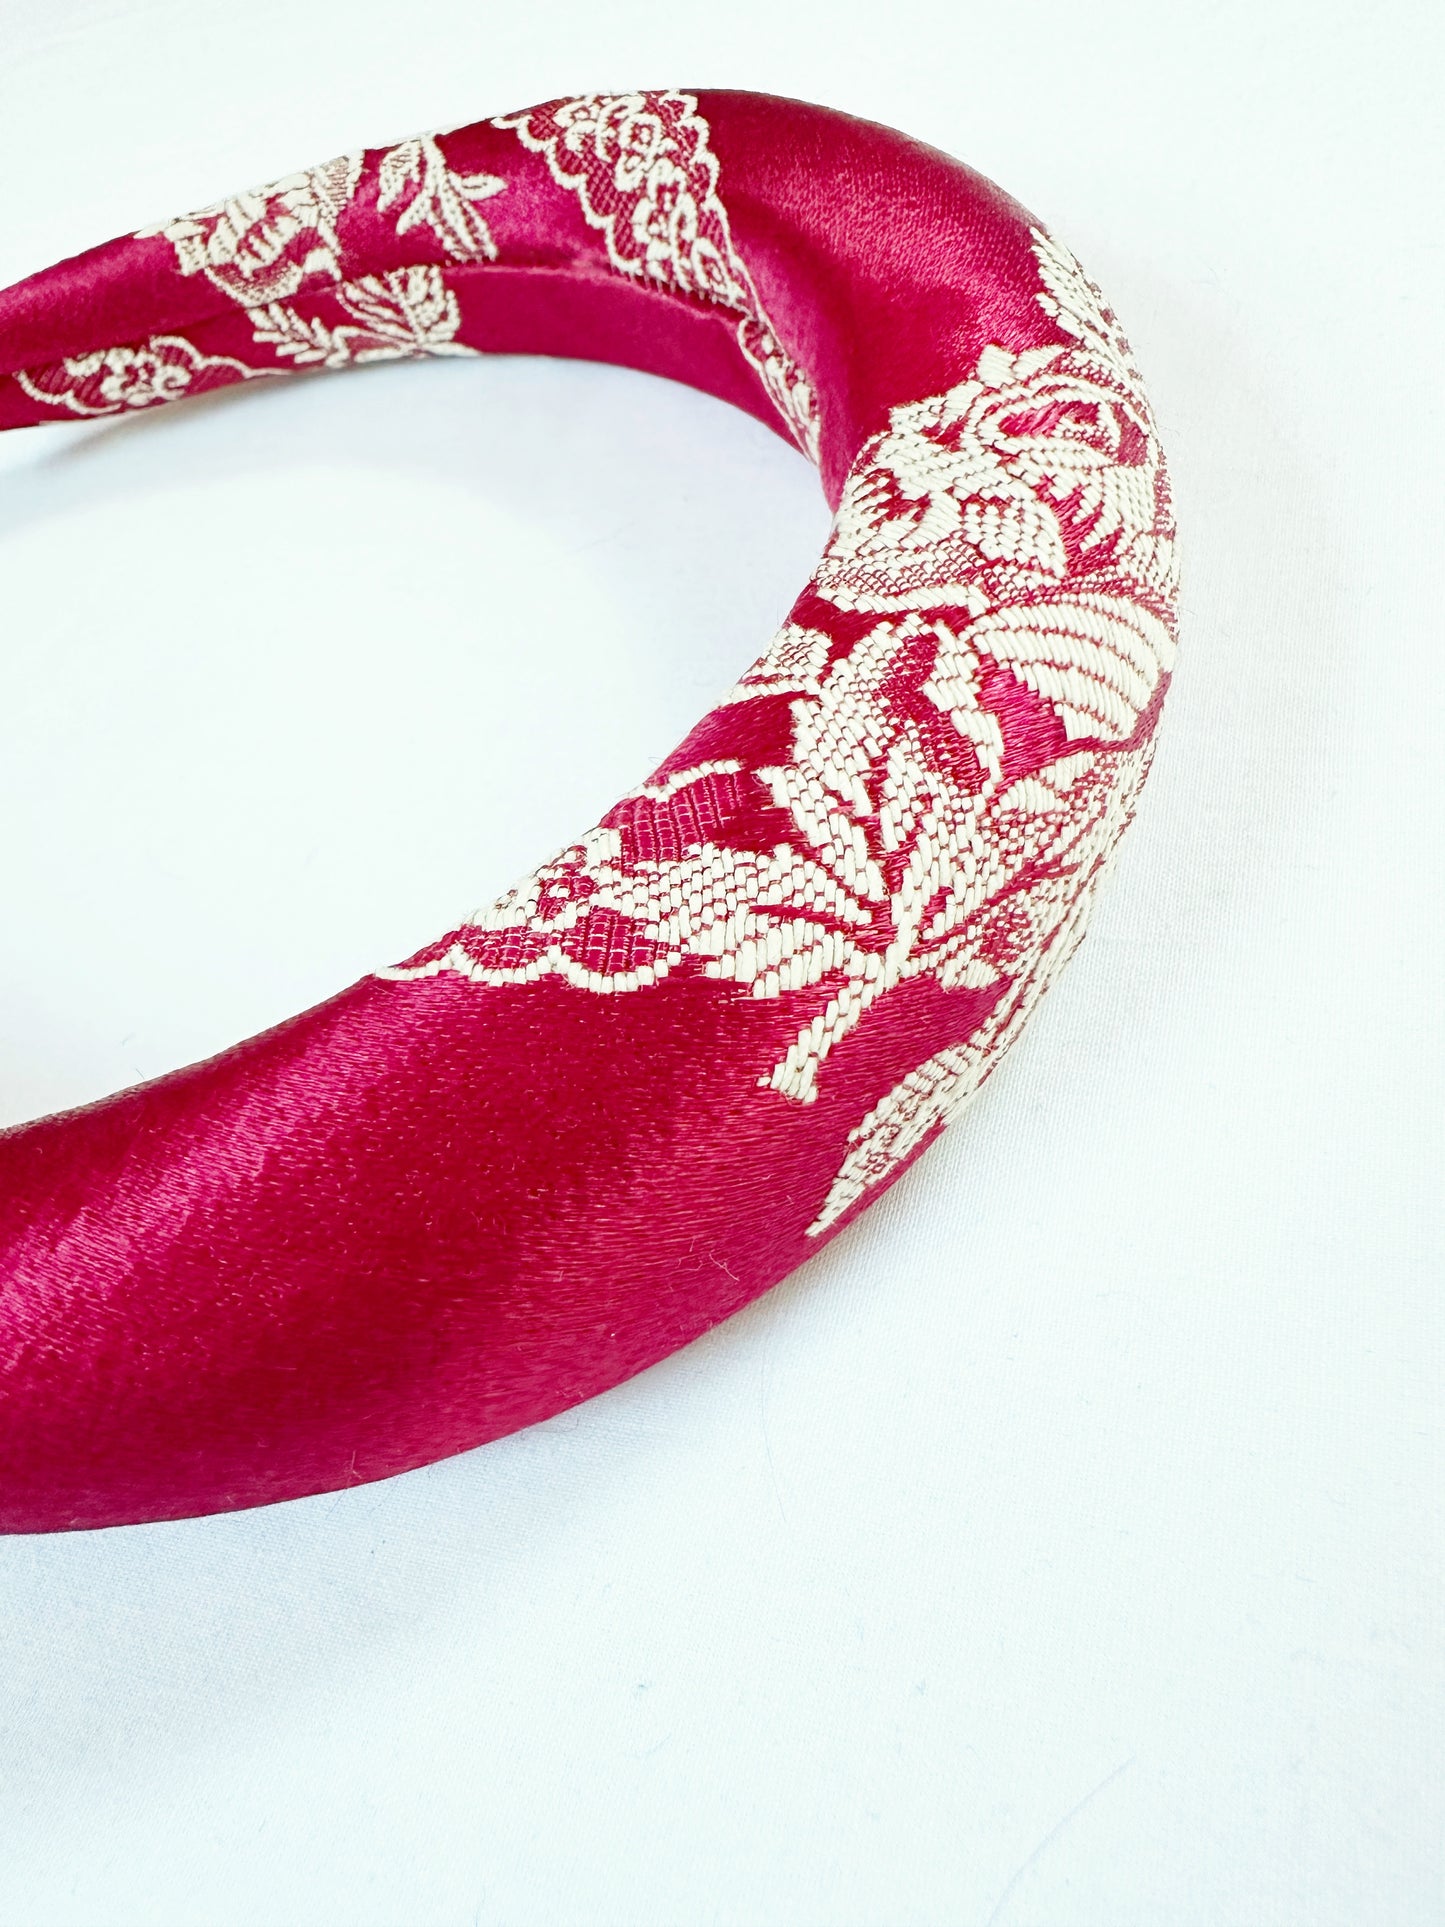 Padded Headband in rose silk brocade